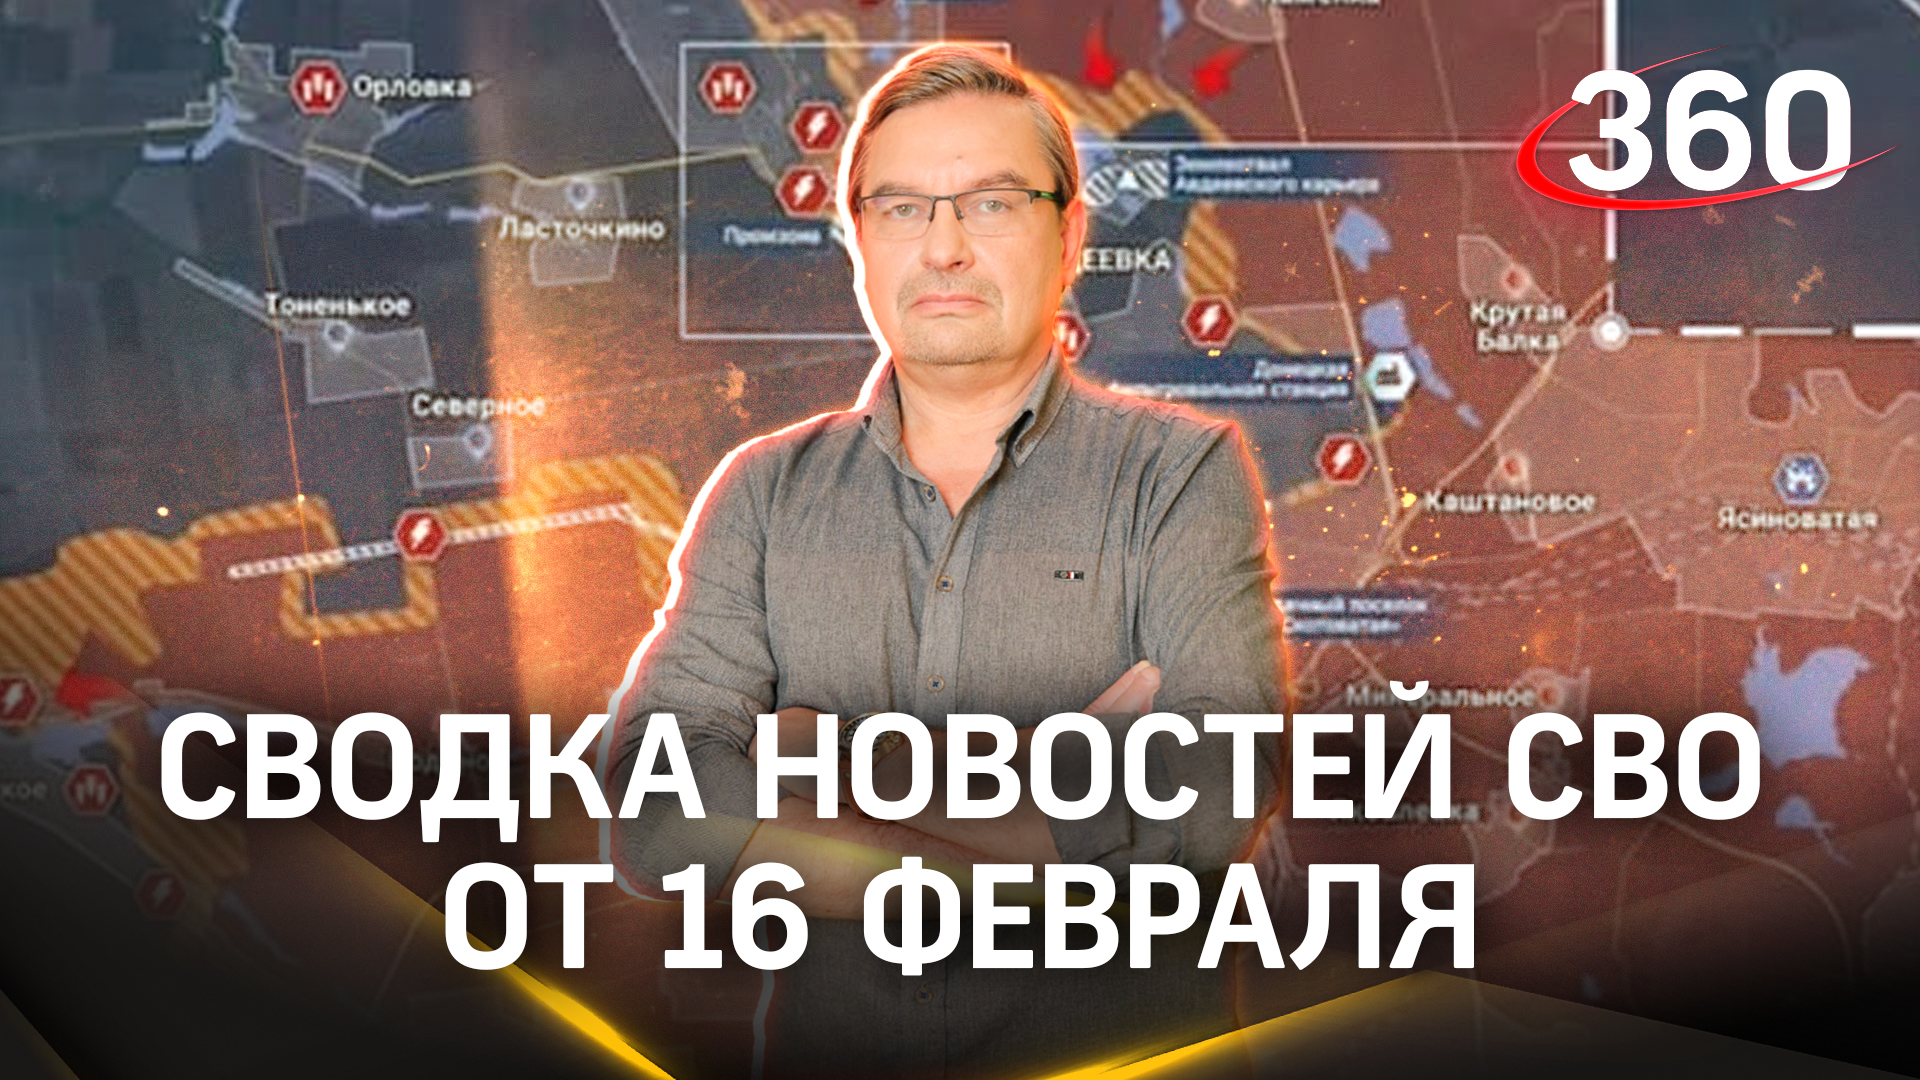 Онуфриенко: «Ситуация в Авдеевке пришла к логическому завершению». Сводка новостей СВО от 16 февраля